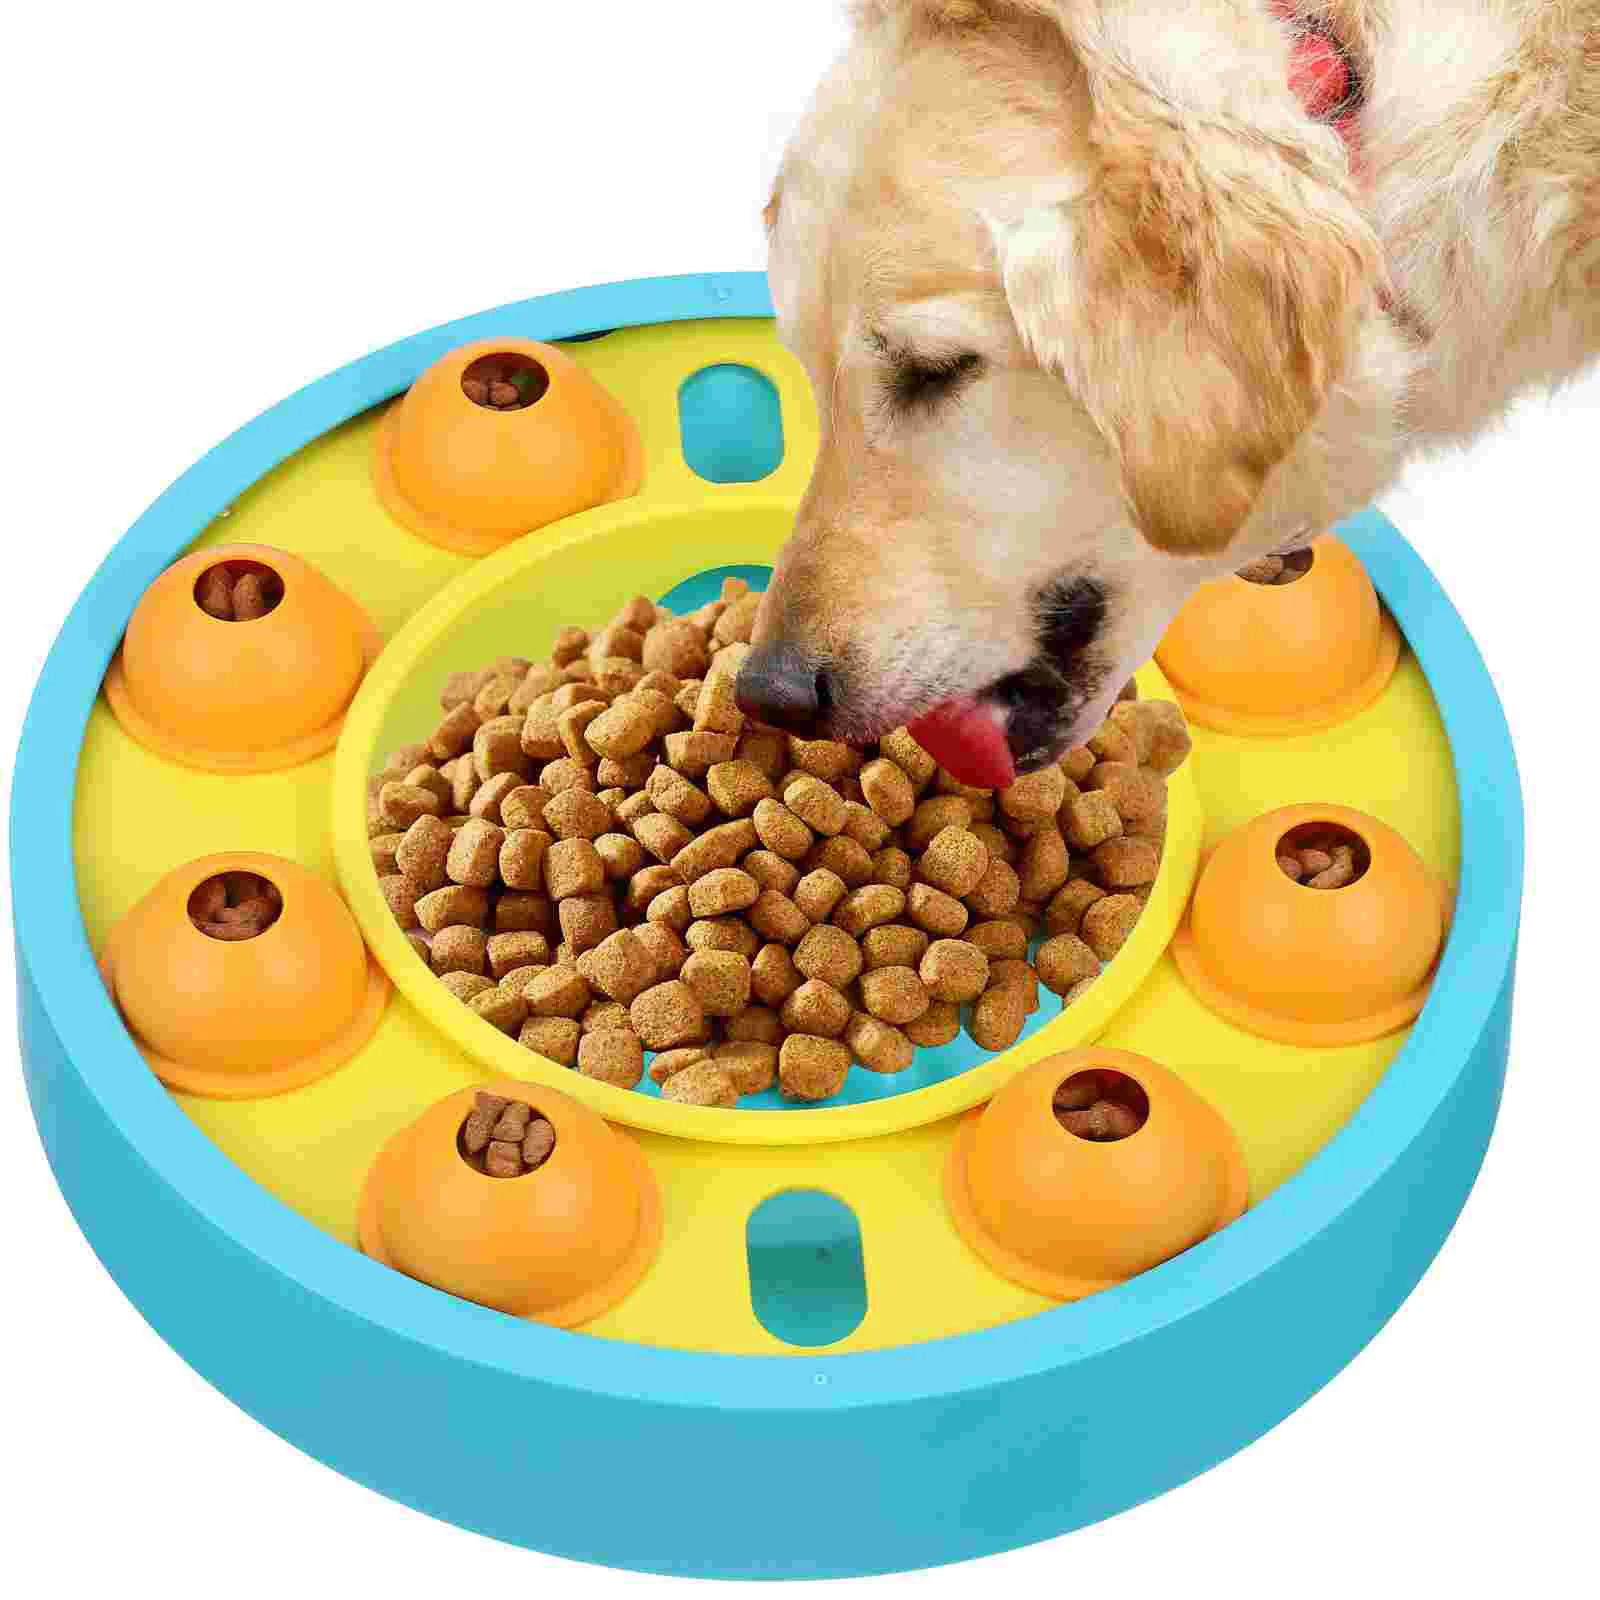 

Игрушка для собак, медленная кормушка для собак, обучающая игрушка-головоломка, товары для домашних животных